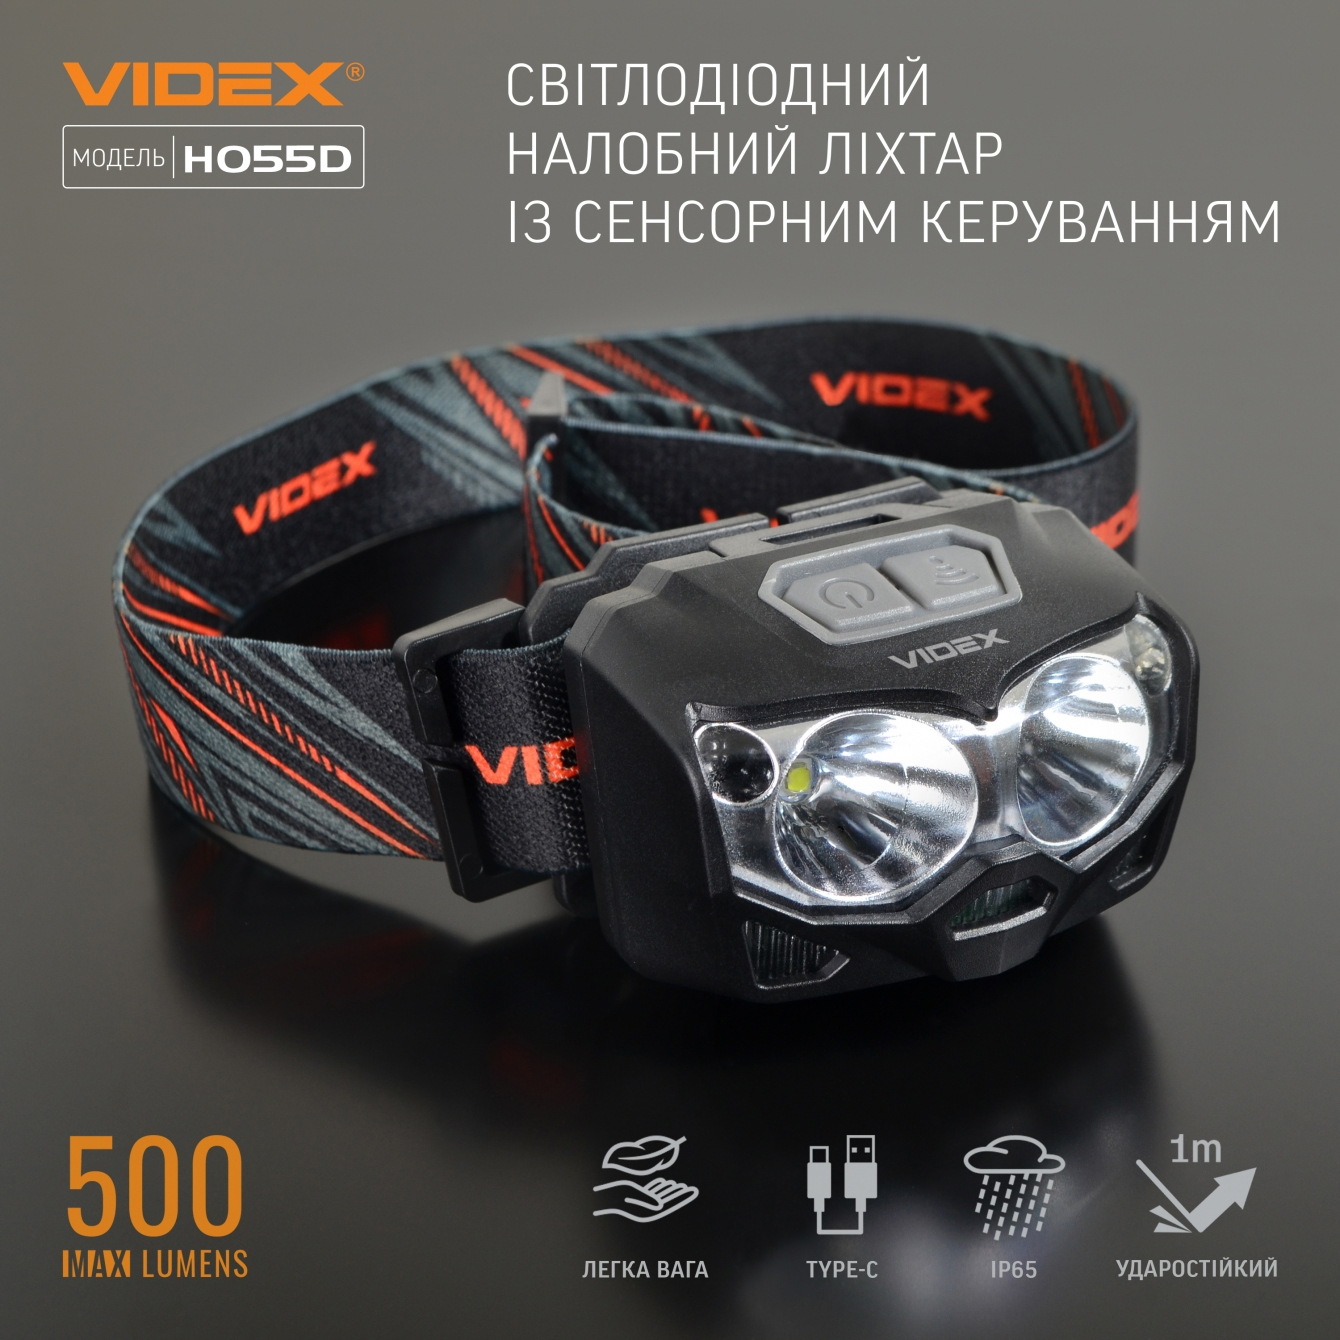 VIDEX VLF-H055D 5000K